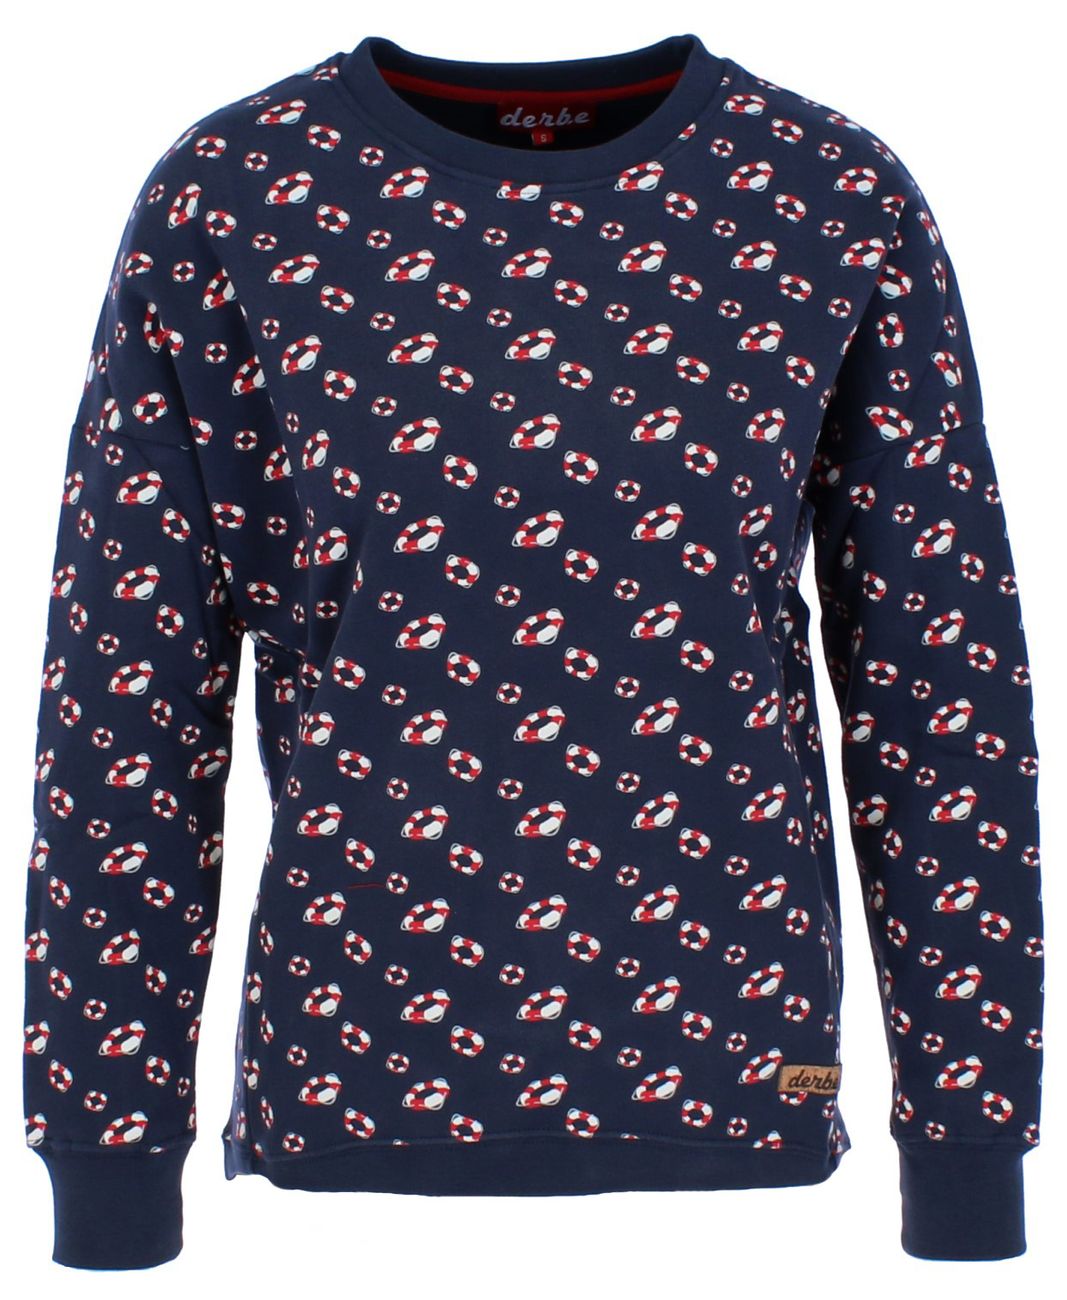 Derbe Hamburg CLAIRE Damen Sweatshirt 100% Baumwolle All-Over-Print - Derbe Hamburg - SAGATOO - 4251634705007